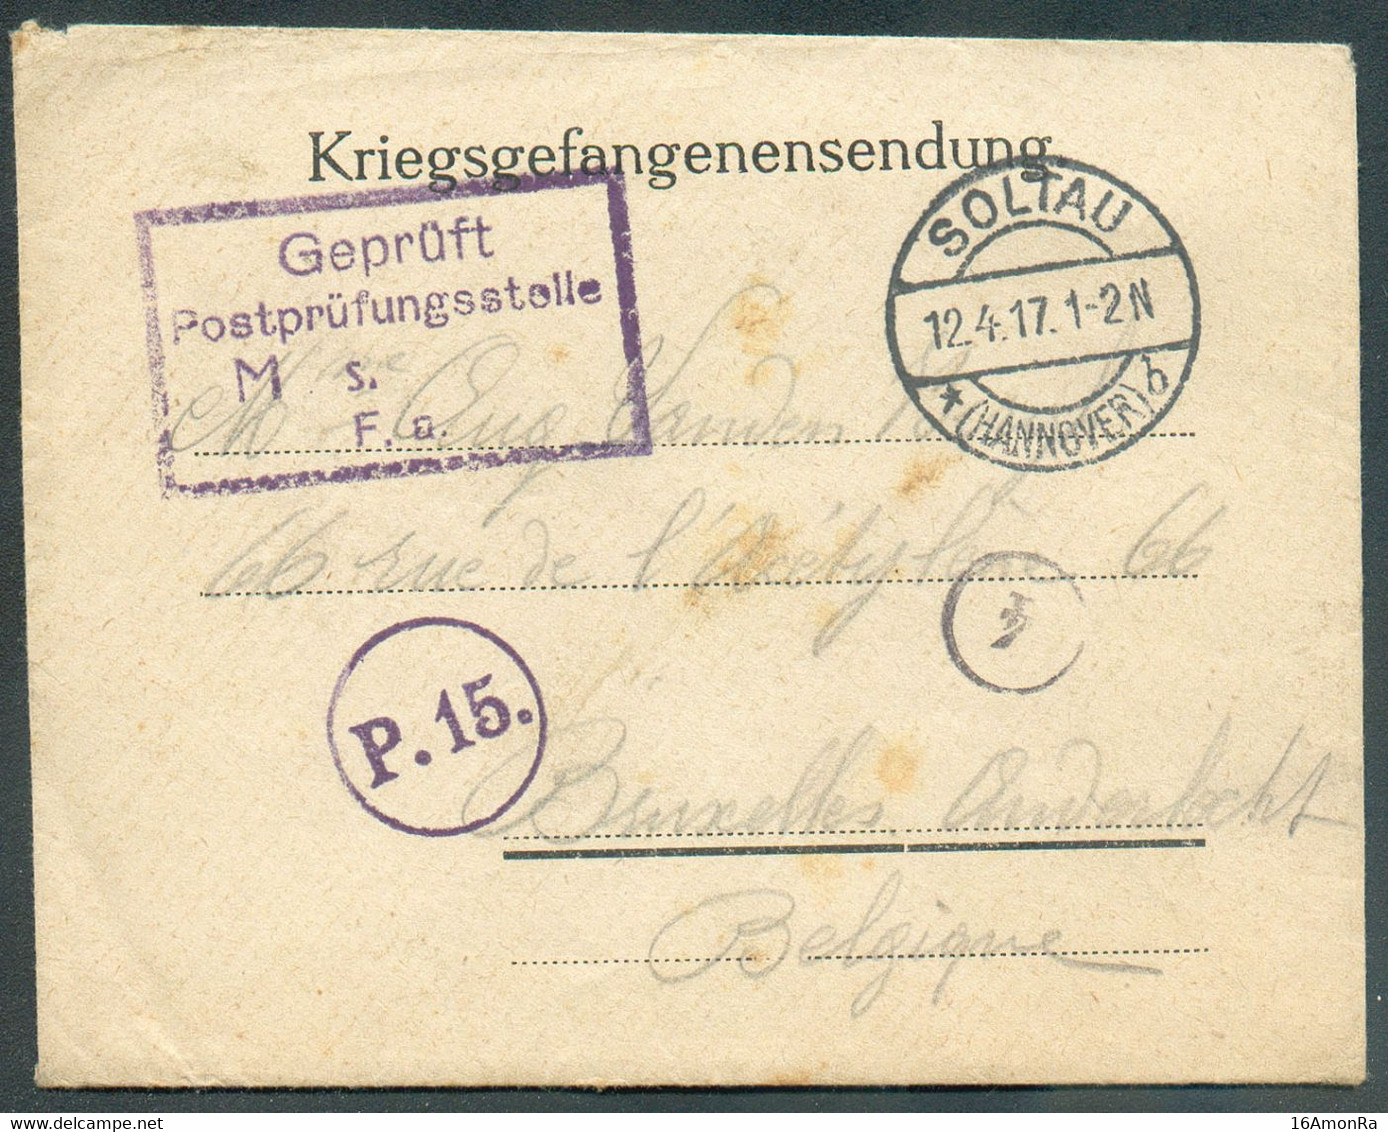 Enveloppe (Kriegsgefangenensendung) Dc SOLTAU 12.4 1917 + Griffe Geprüft Postprüfungsstelle M.s. F.a.   + Griffe P.15. v - Prisoners